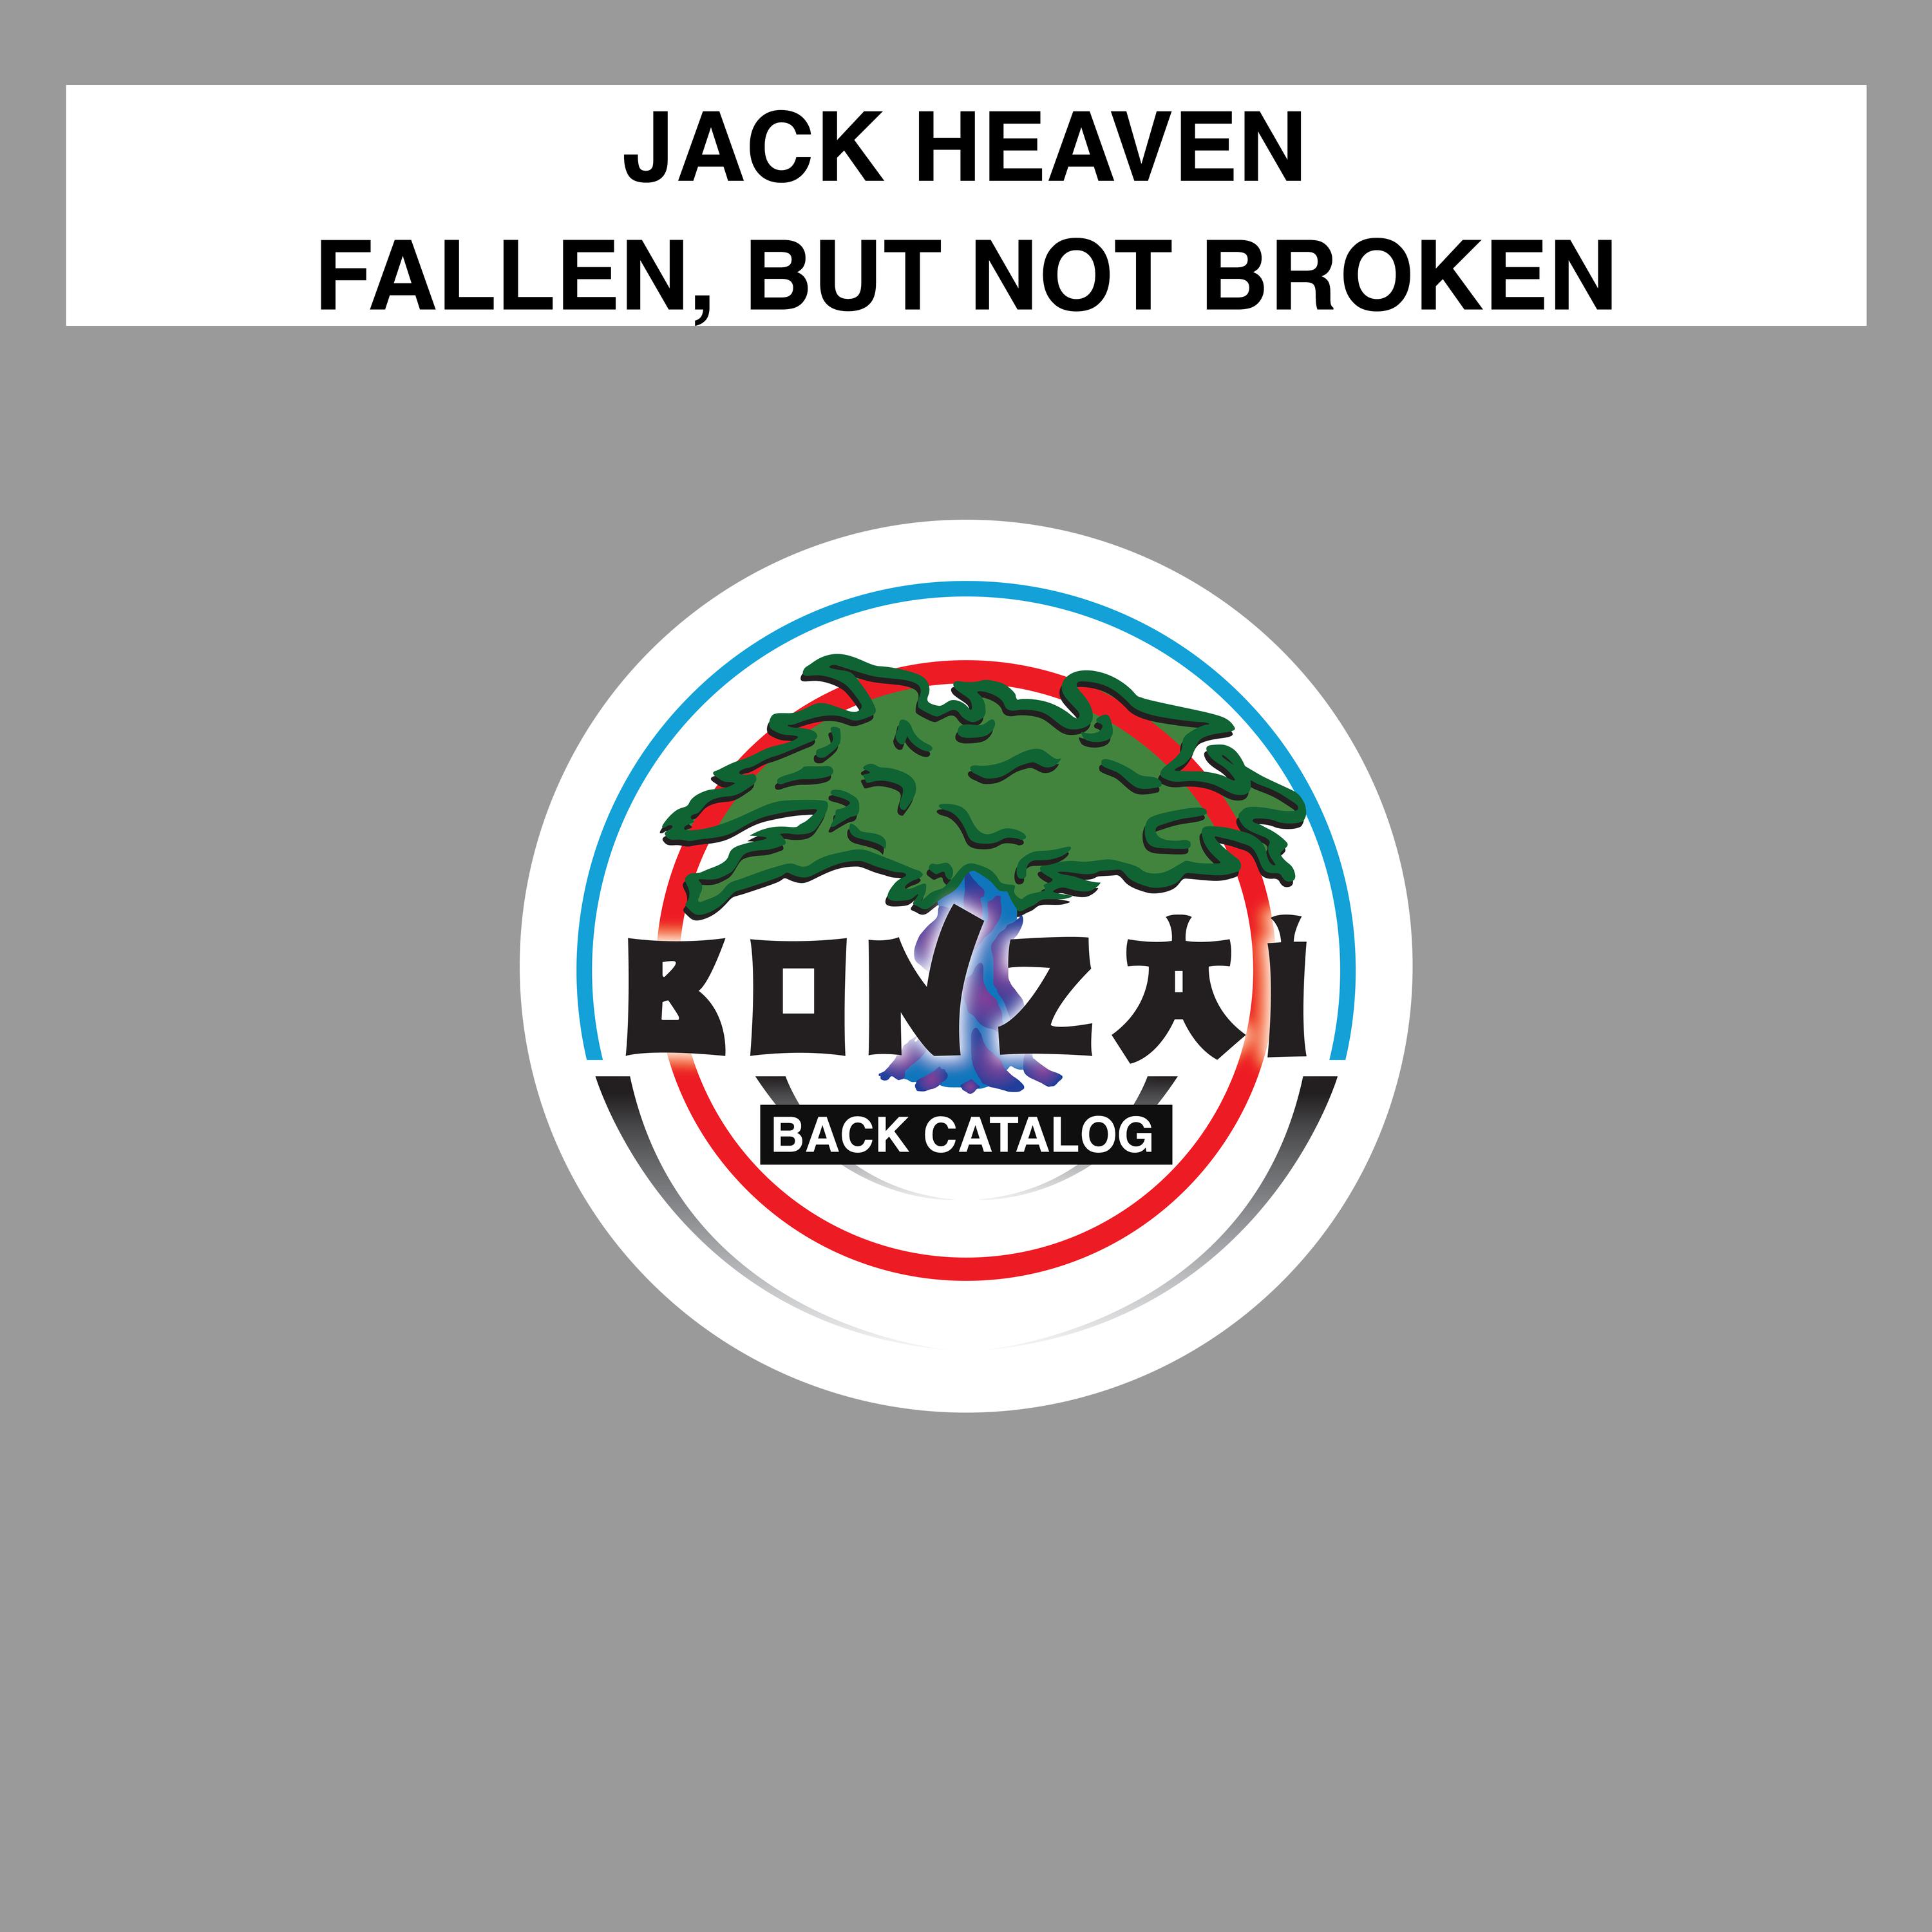 Fallen, But Not Broken